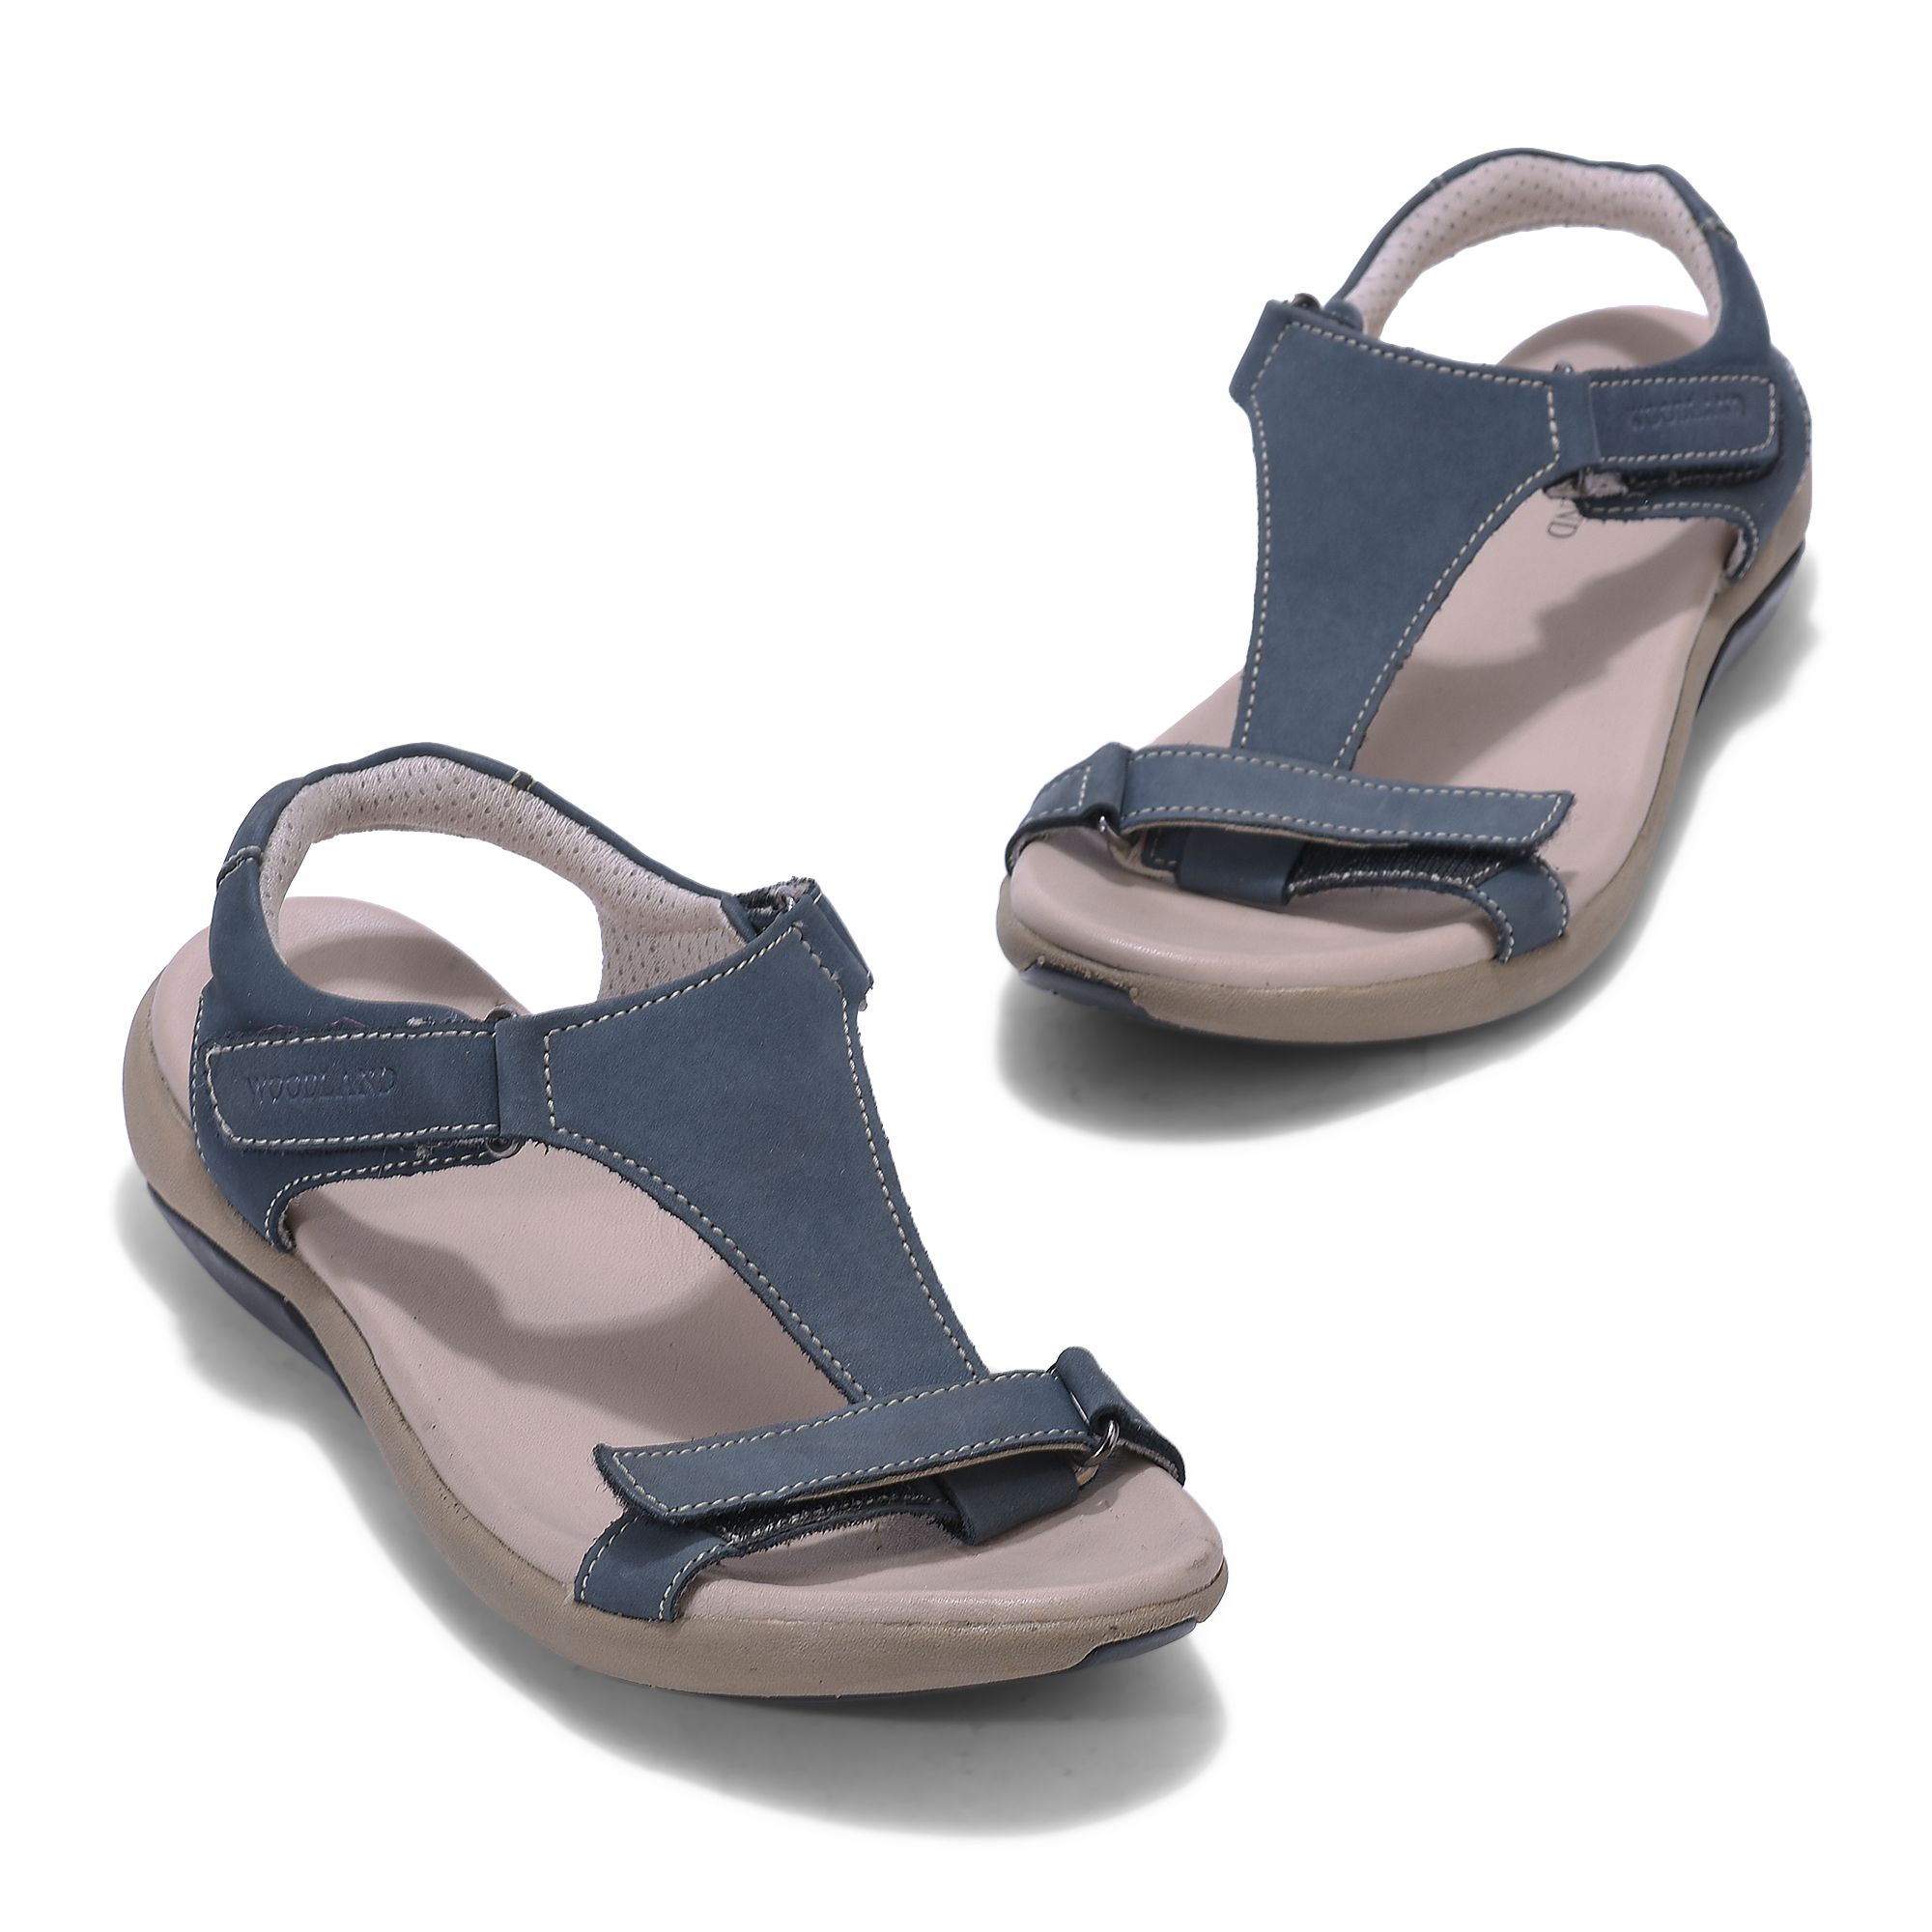 Merrell Performance Sandals for Women for sale | eBay-hkpdtq2012.edu.vn